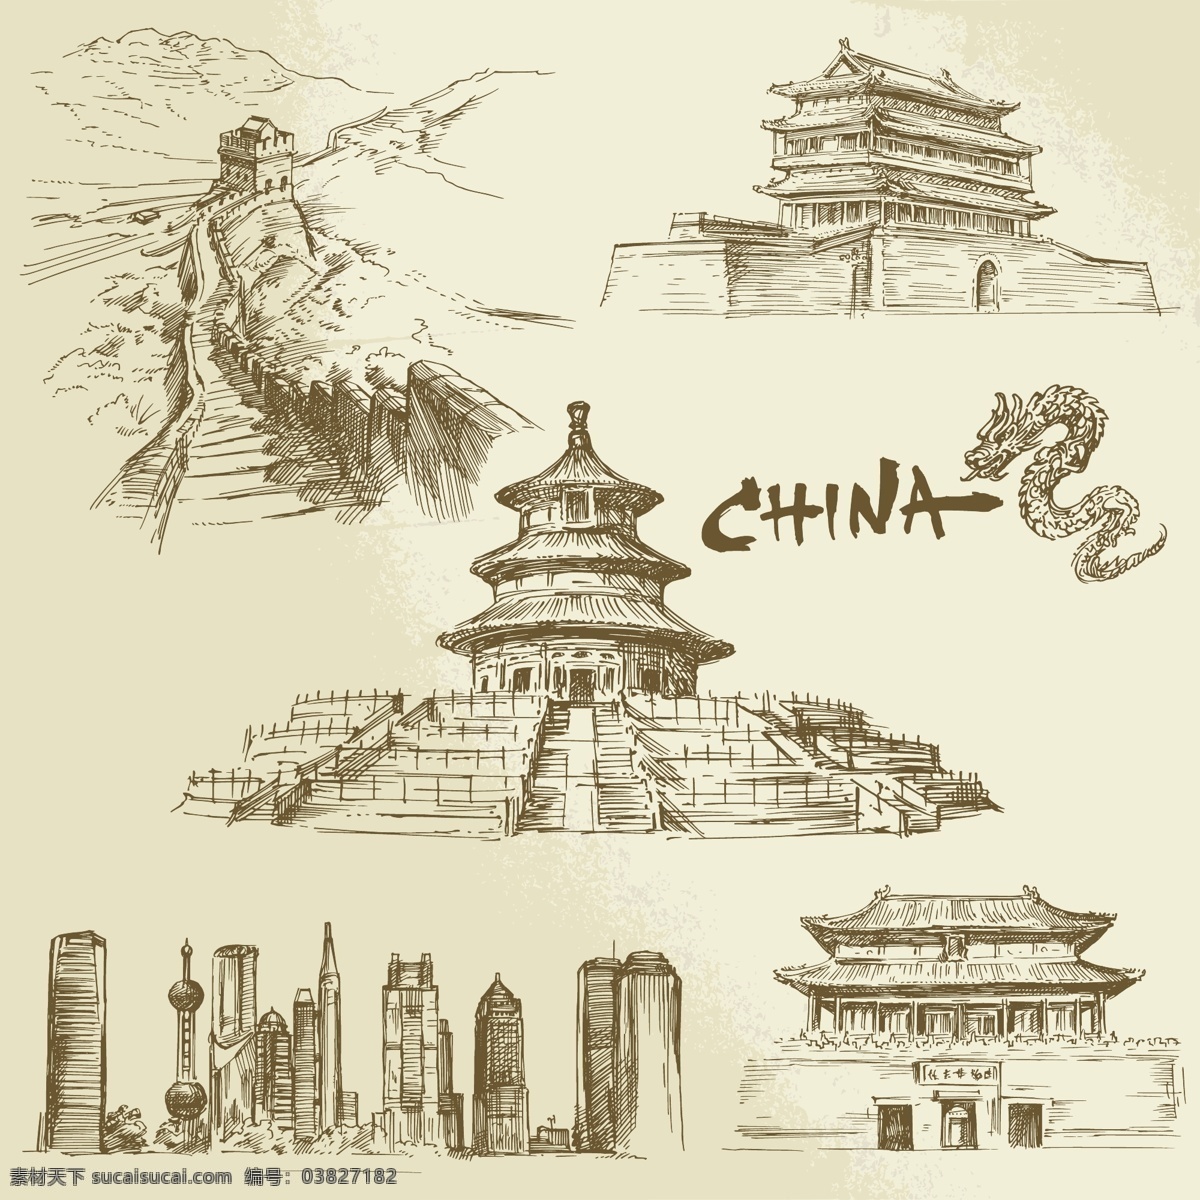 中国 著名 建筑 插画 长安 长城 环境设计 建筑设计 手绘素材 速写 中国旅游画册 中国建筑插画 中国建筑手绘 装饰素材